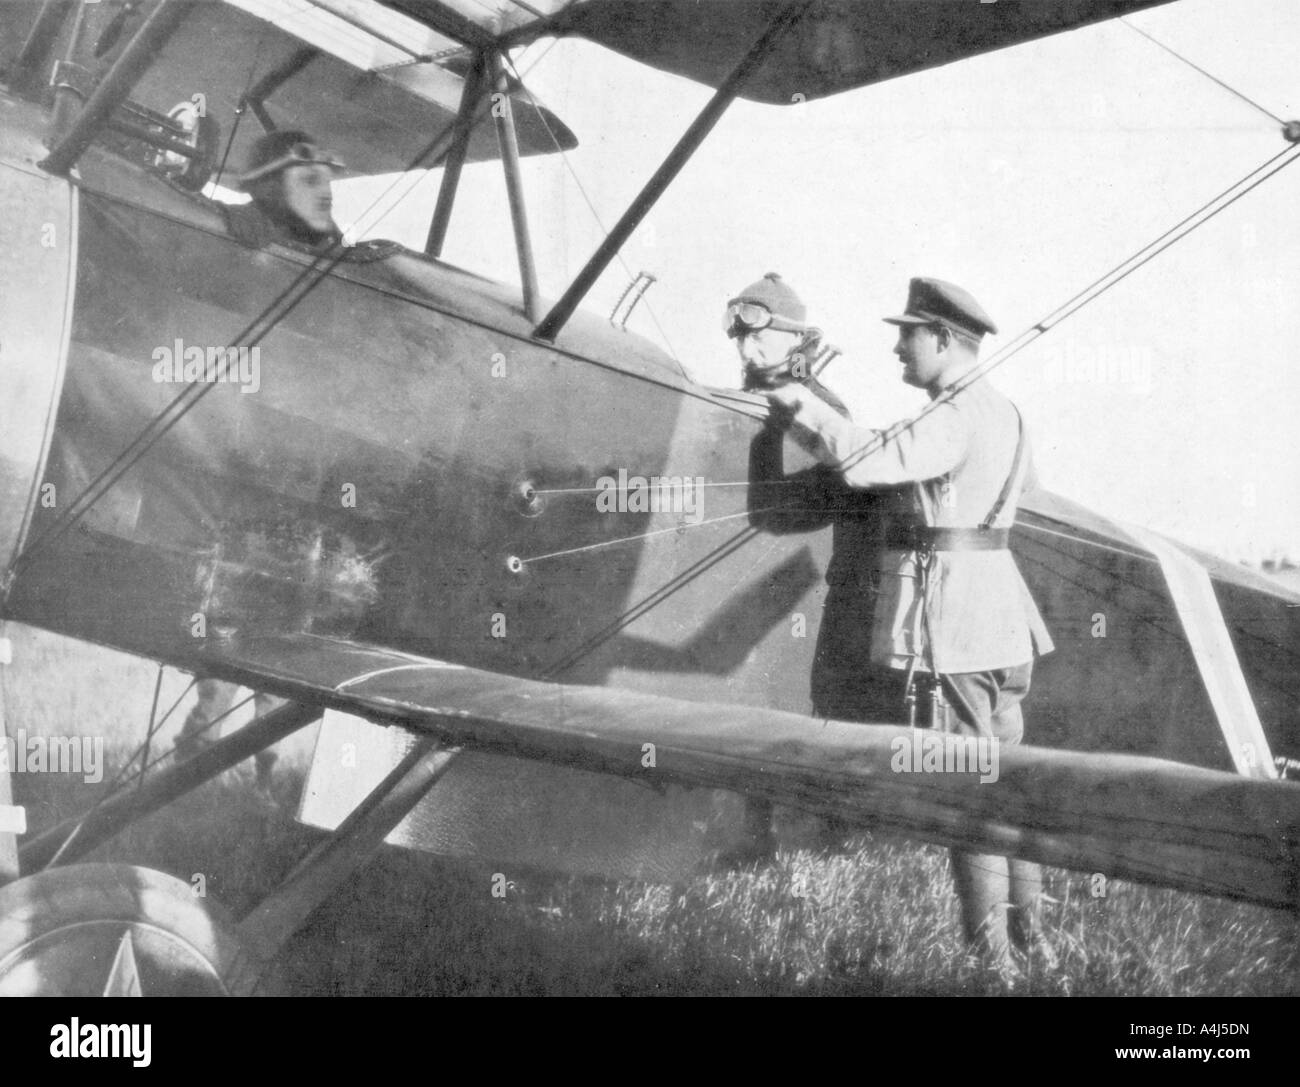 Albert Ier de Belgique, laissant en avion pour visiter les lignes de l'Yser, c1917. Artiste : Inconnu Banque D'Images